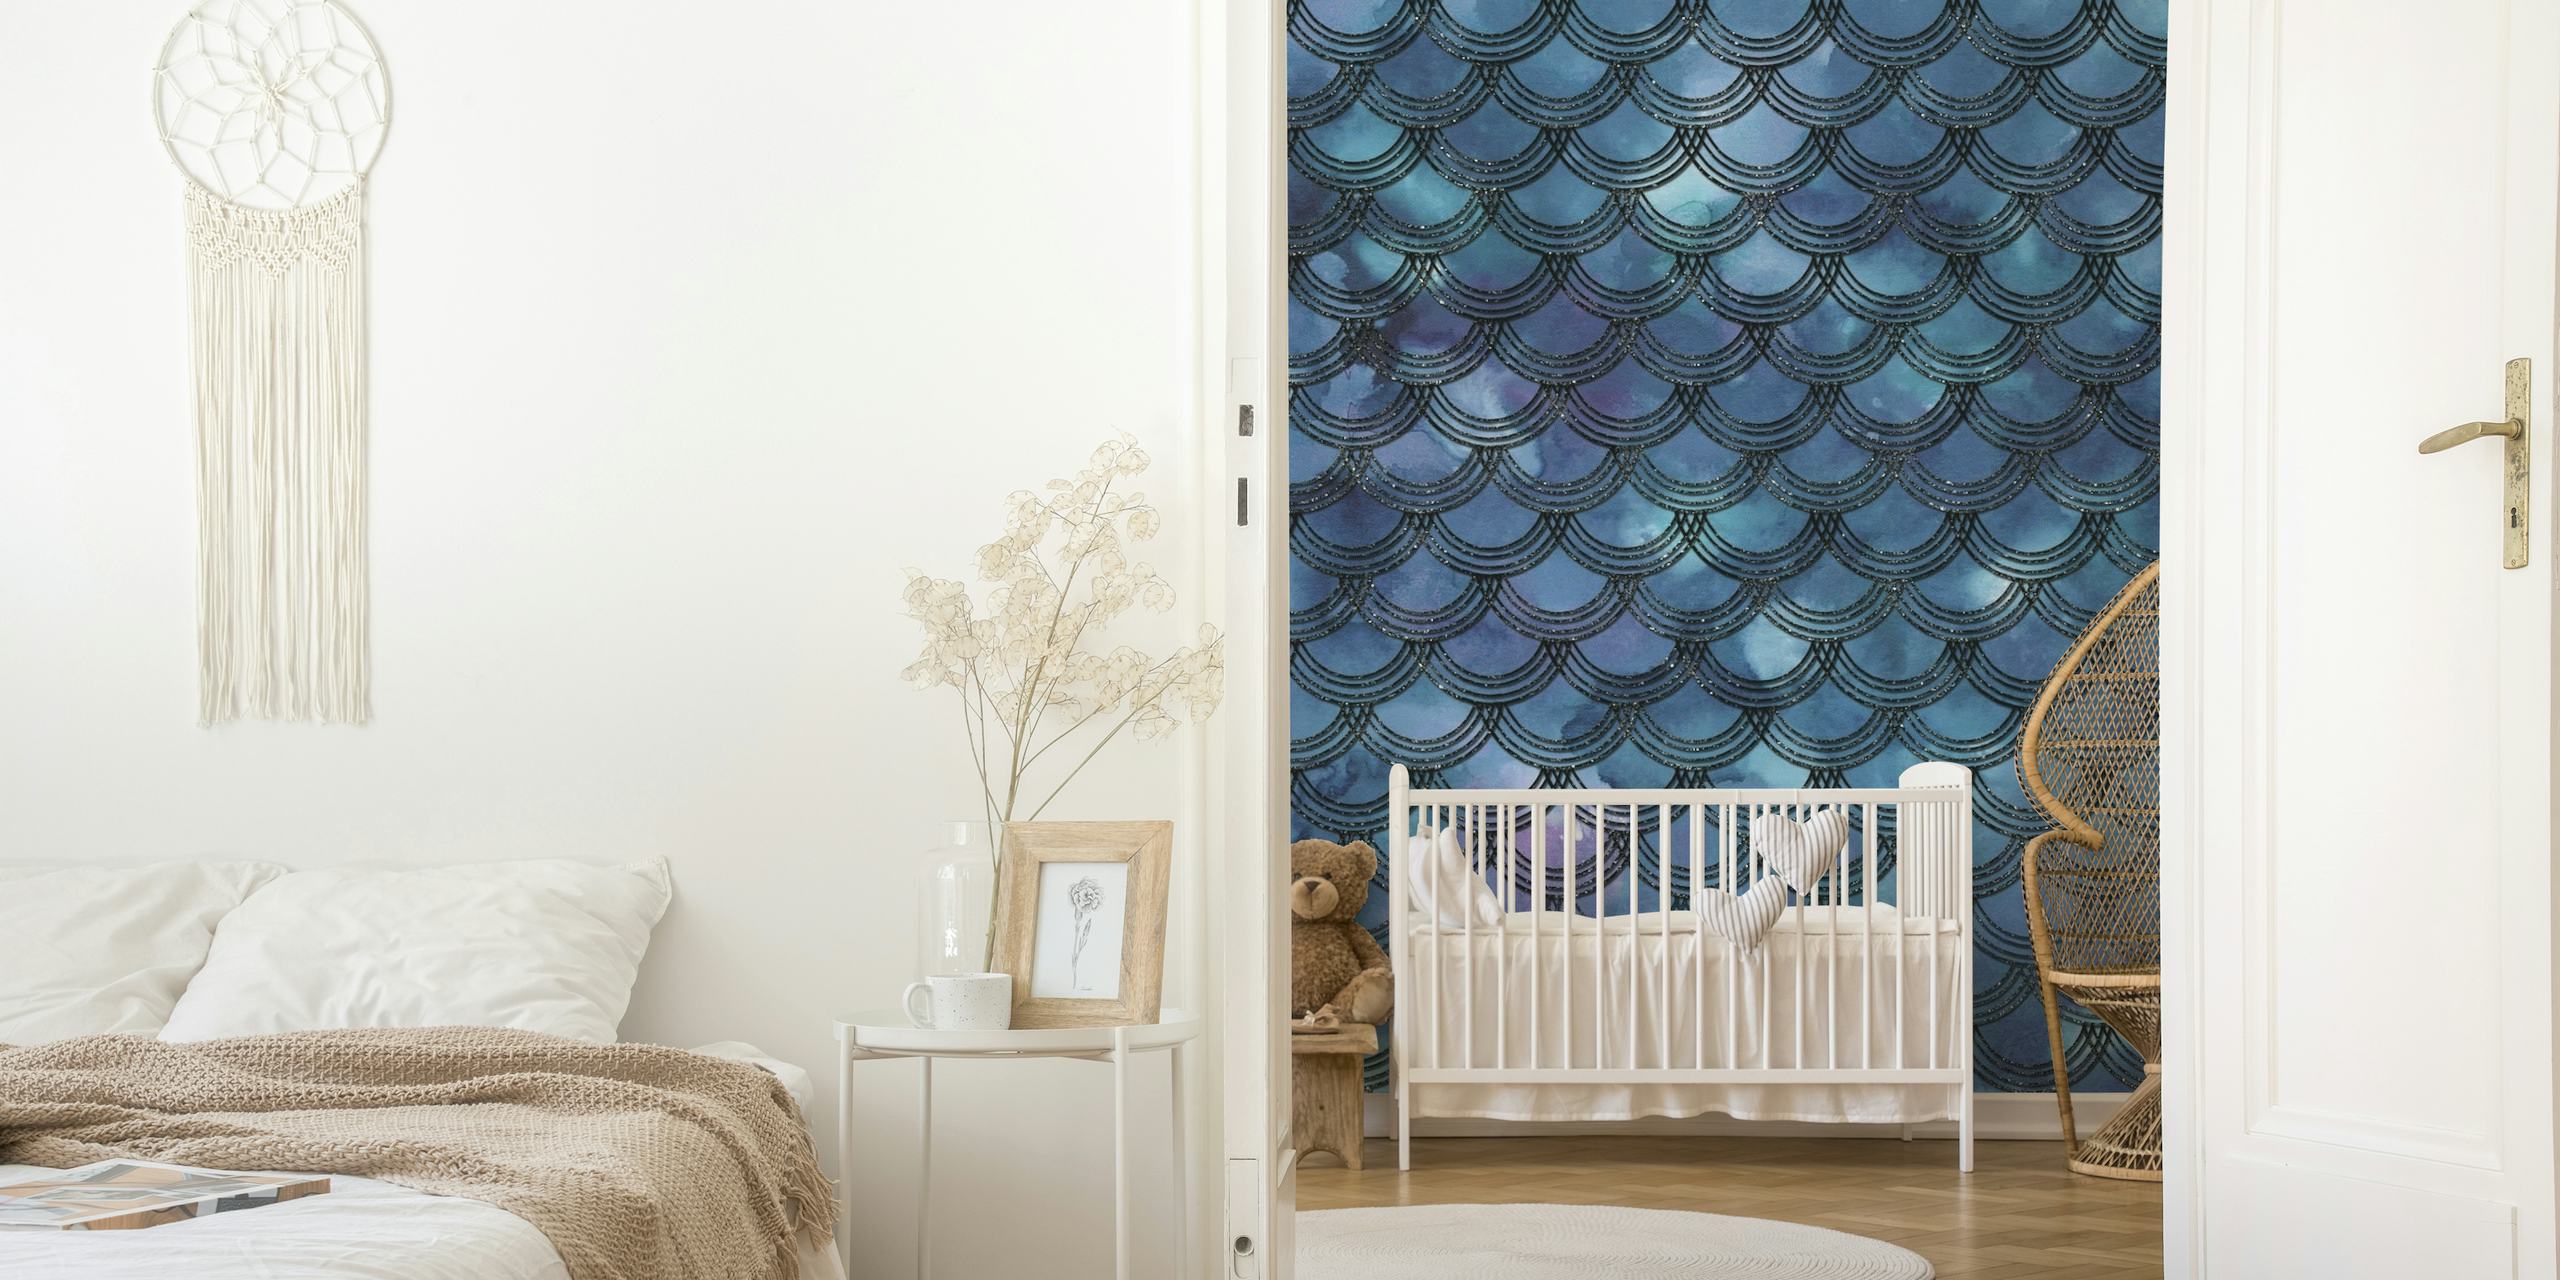 Zidna slika s krljuštima sirene inspirirana fantazijom u ljubičastim i plavim nijansama